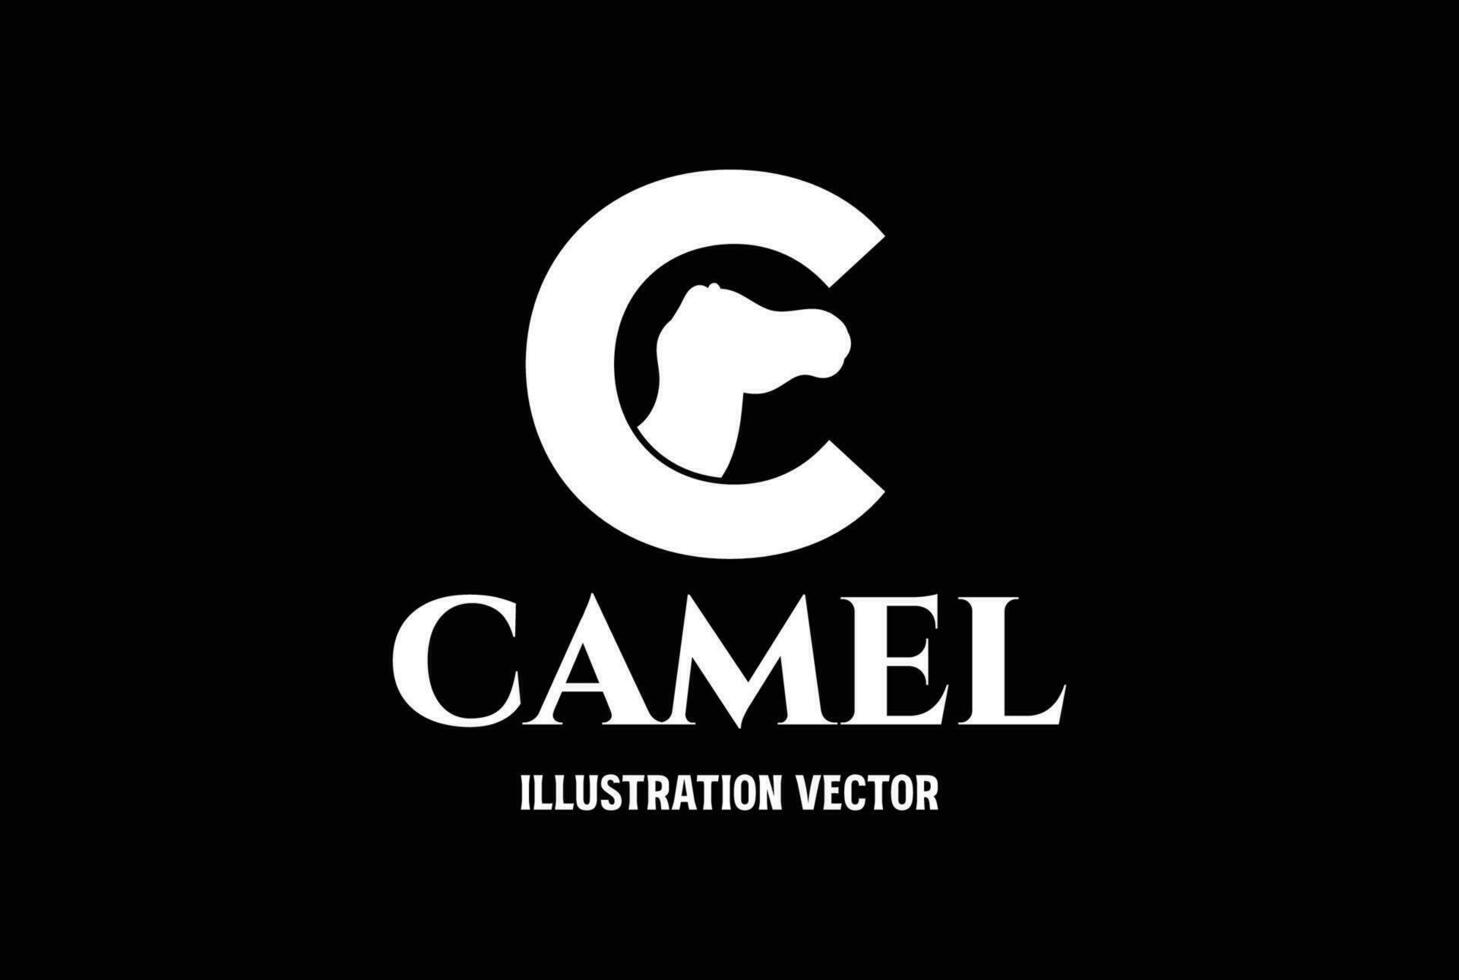 inicial carta c para camelo caravana placa símbolo ícone ilustração vetor